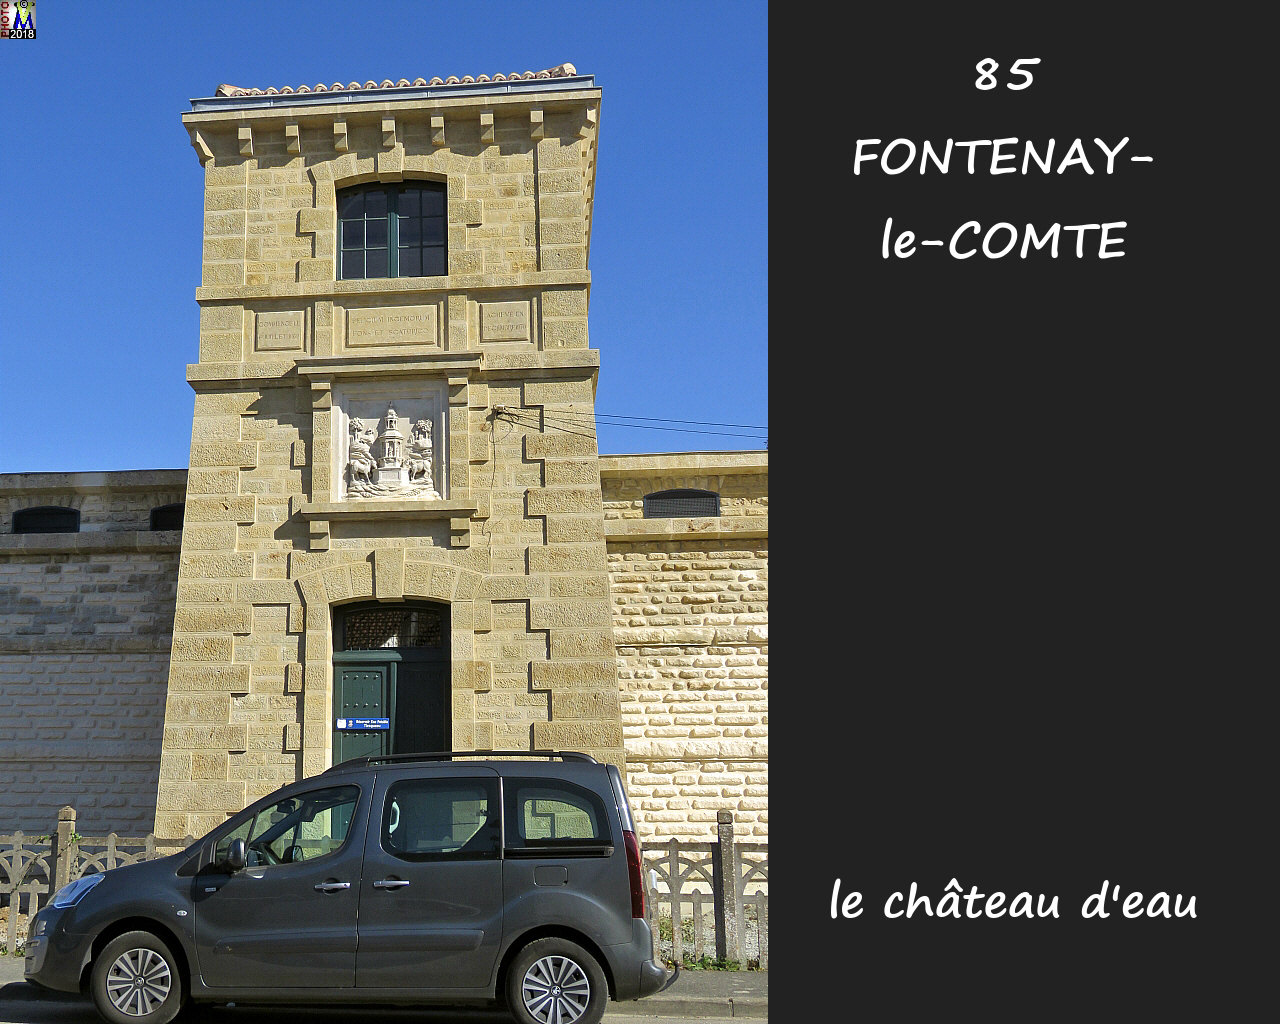 85FONTENAY-COMTE_chateau-eau_1002.jpg